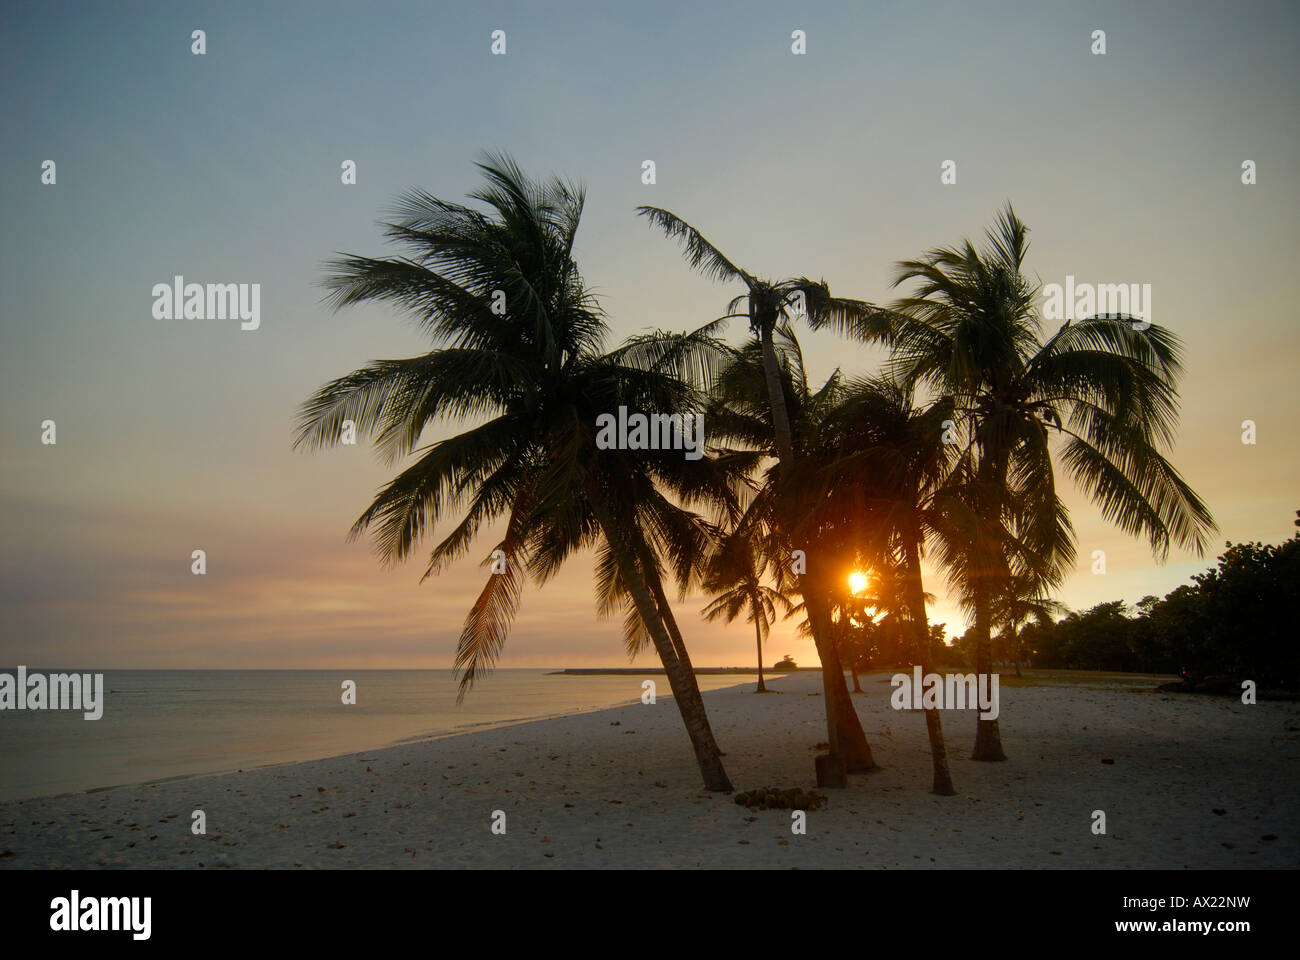 Royal Palms cubain (Roystonea regia) sur la plage au coucher du soleil, Playa Giron (baie de Bigs), Cuba, Caraïbes, Amériques Banque D'Images